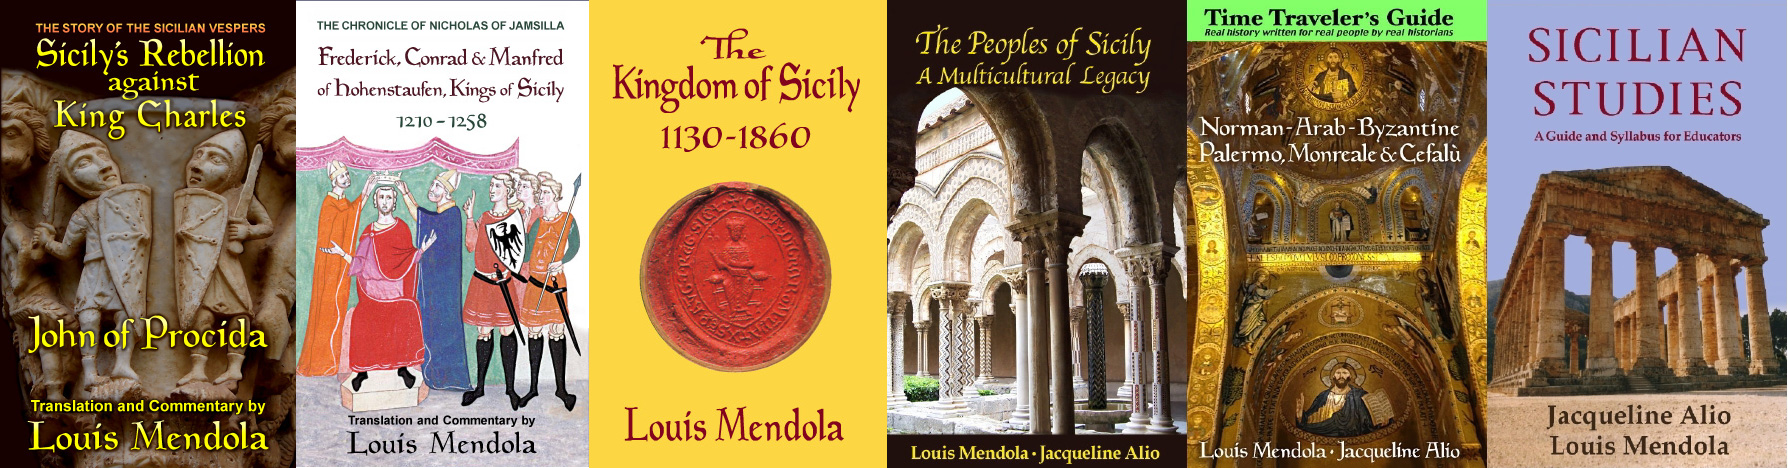 Louis Mendola's books